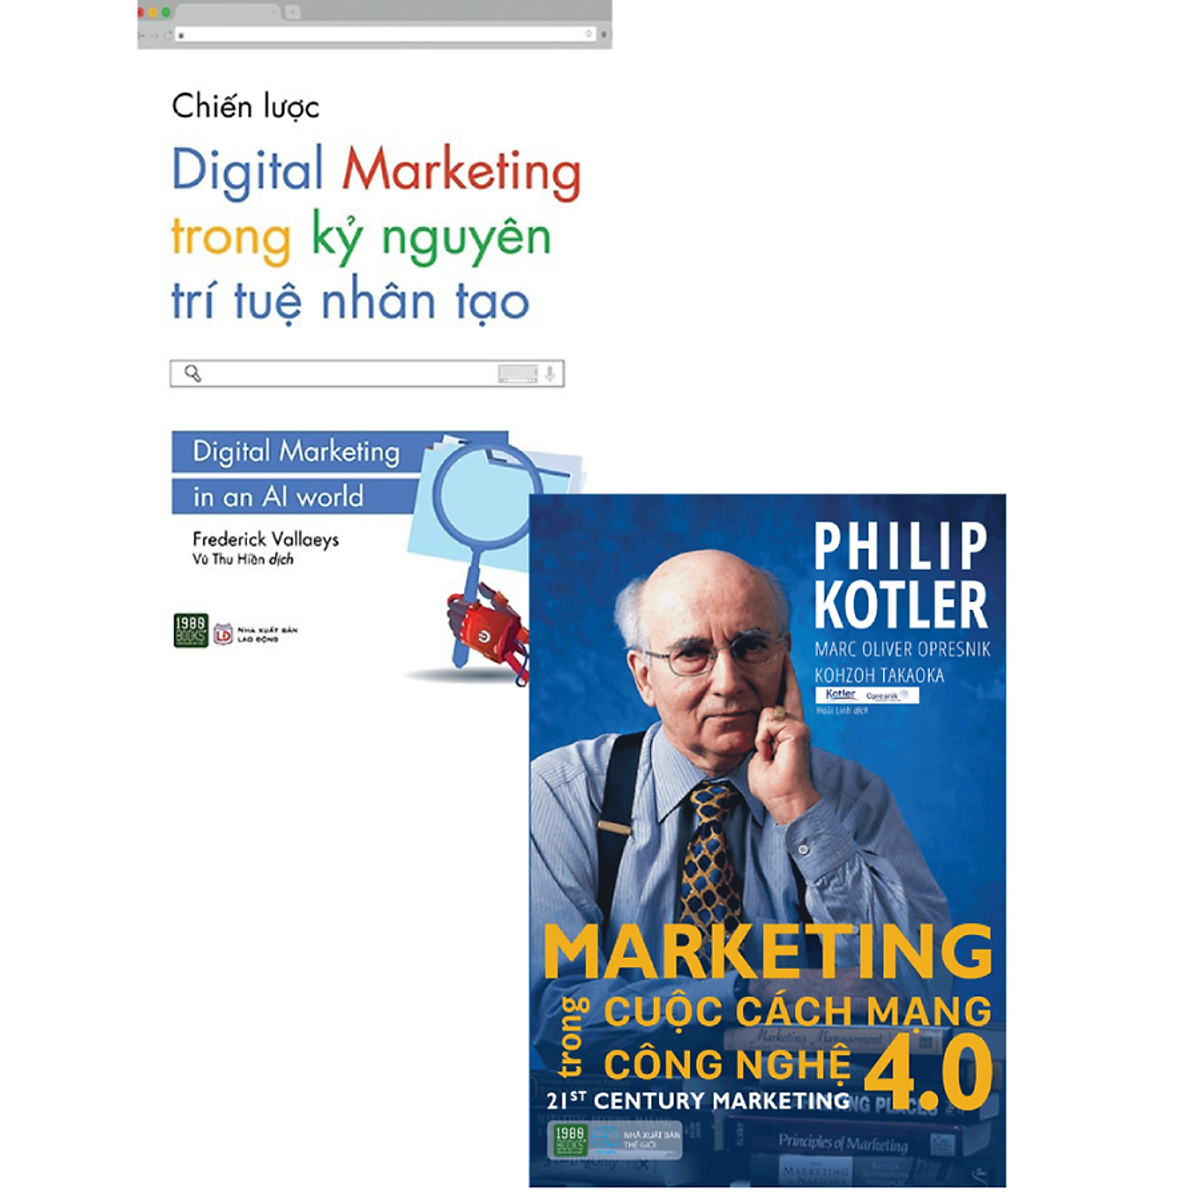 Combo 2 Cuốn: Marketing Trong Cuộc Cách Mạng Công Nghệ 4.0 + Chiến Lược Digital Marketing Trong Kỷ Nguyên Trí Tuệ Nhân Tạo